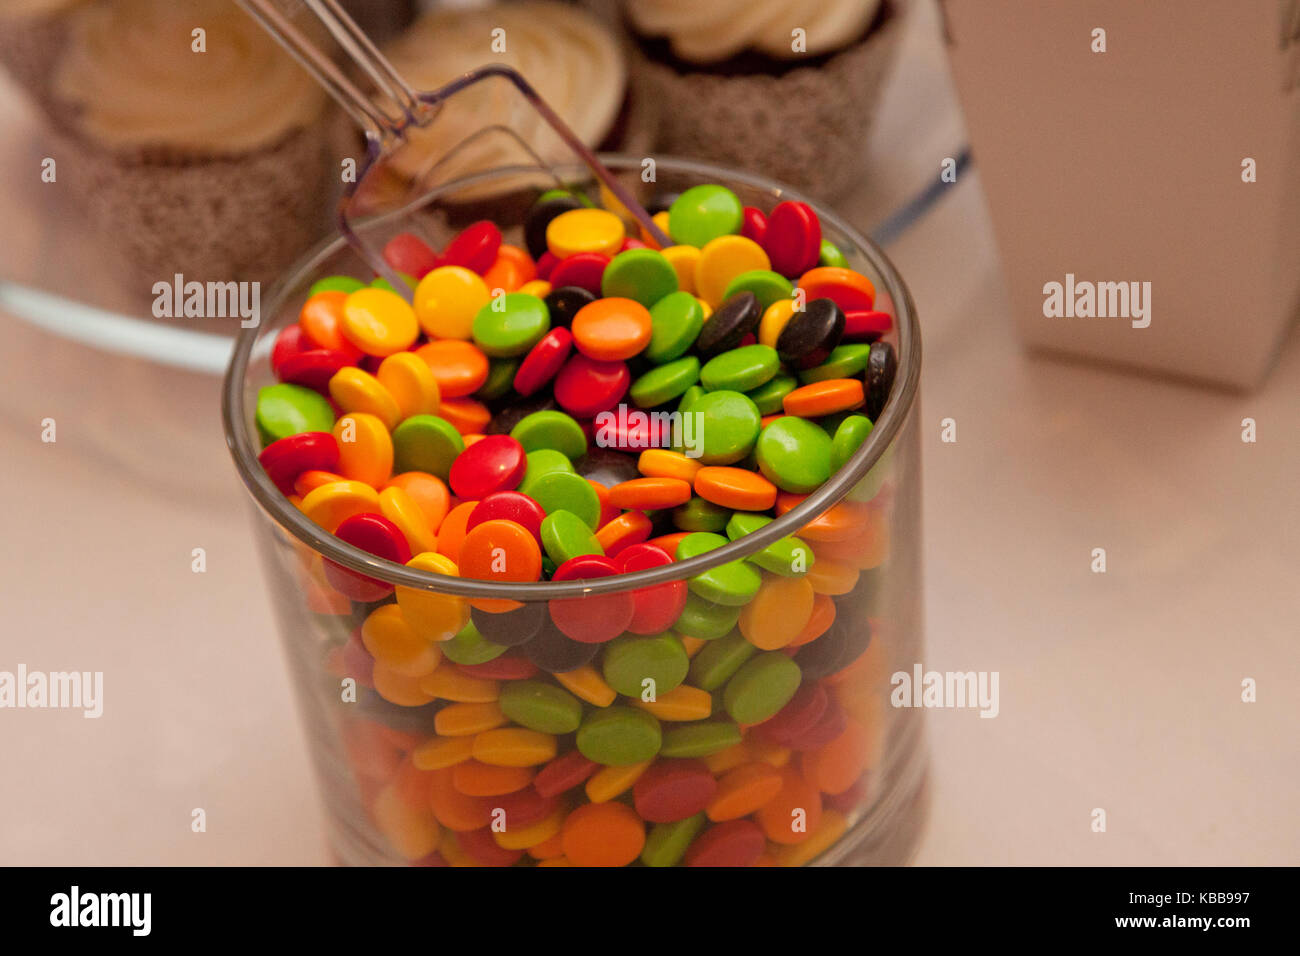 Verde, marrón, rojo y amarillo dulces de colores en una jarra con pastelitos en el fondo Foto de stock